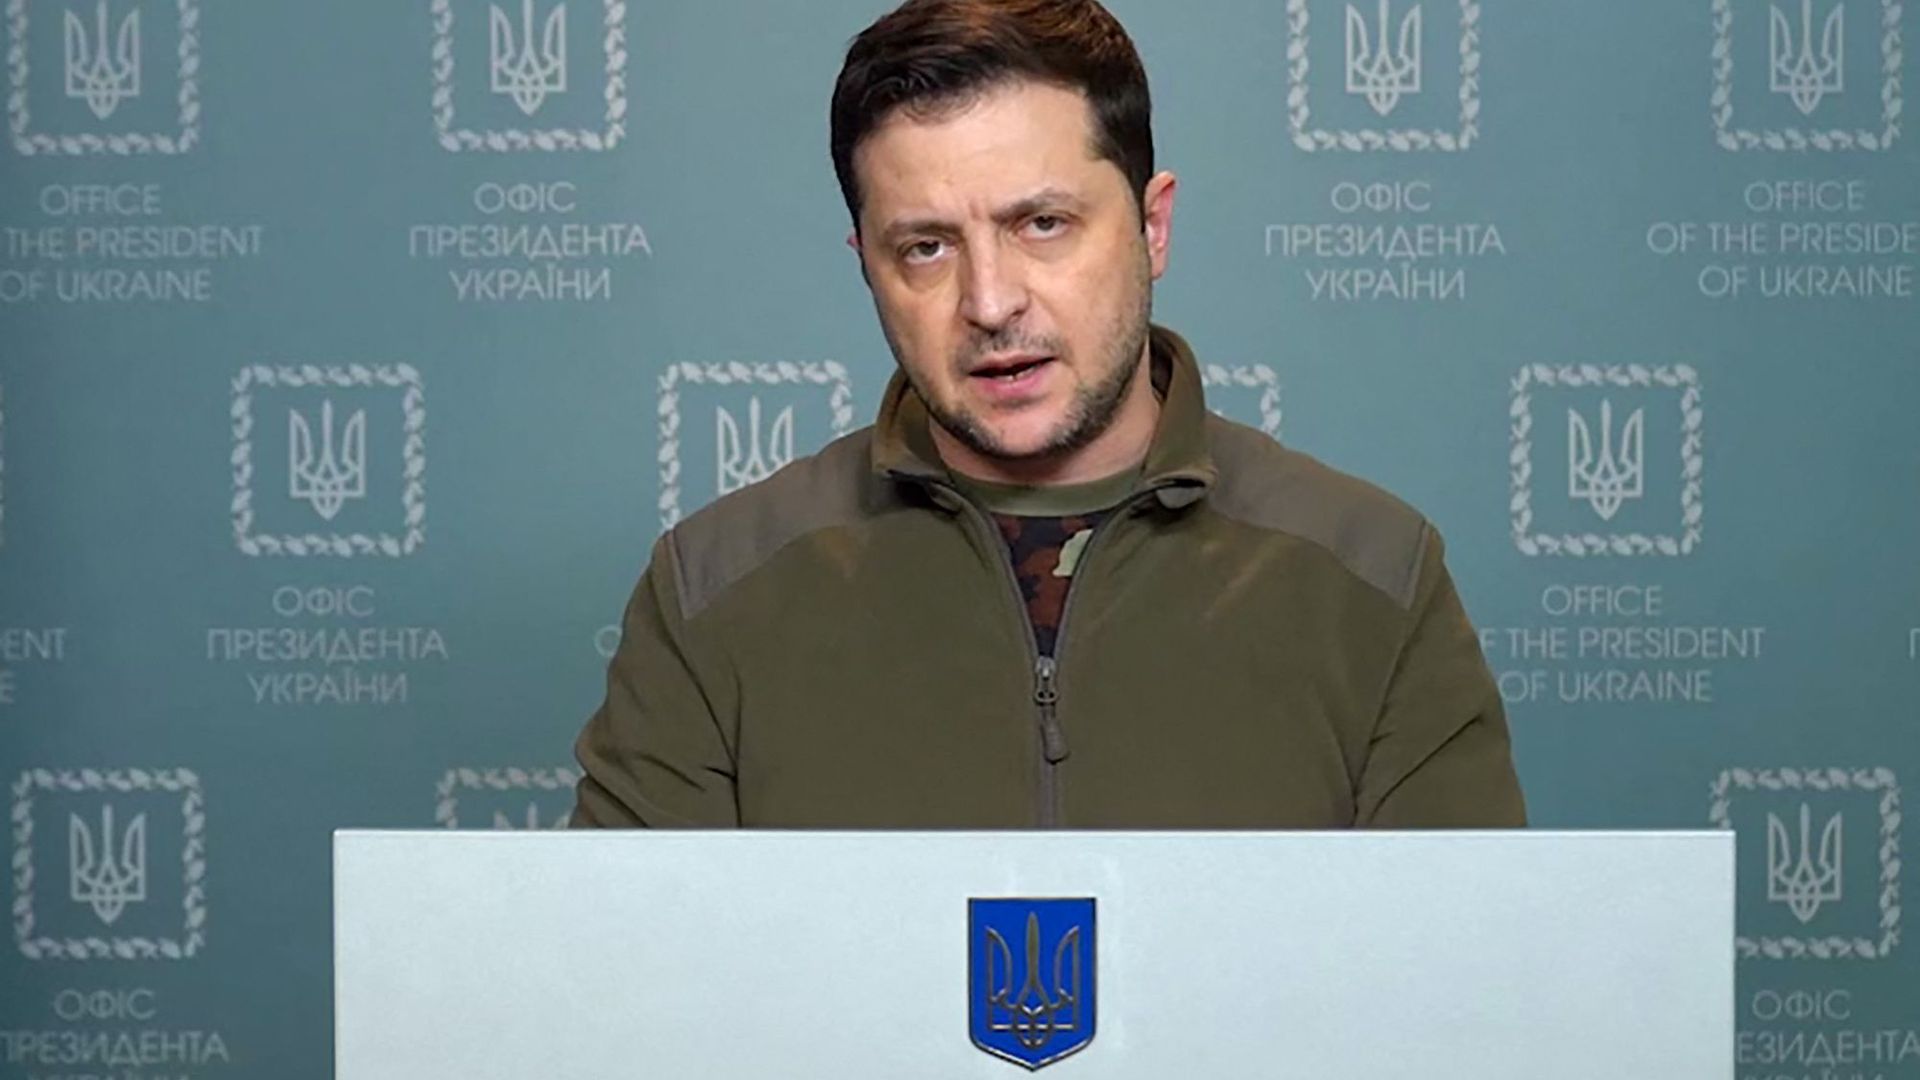 Capture d'une vidéo publiée par la présidence ukrainienne ce lundi 28 février.